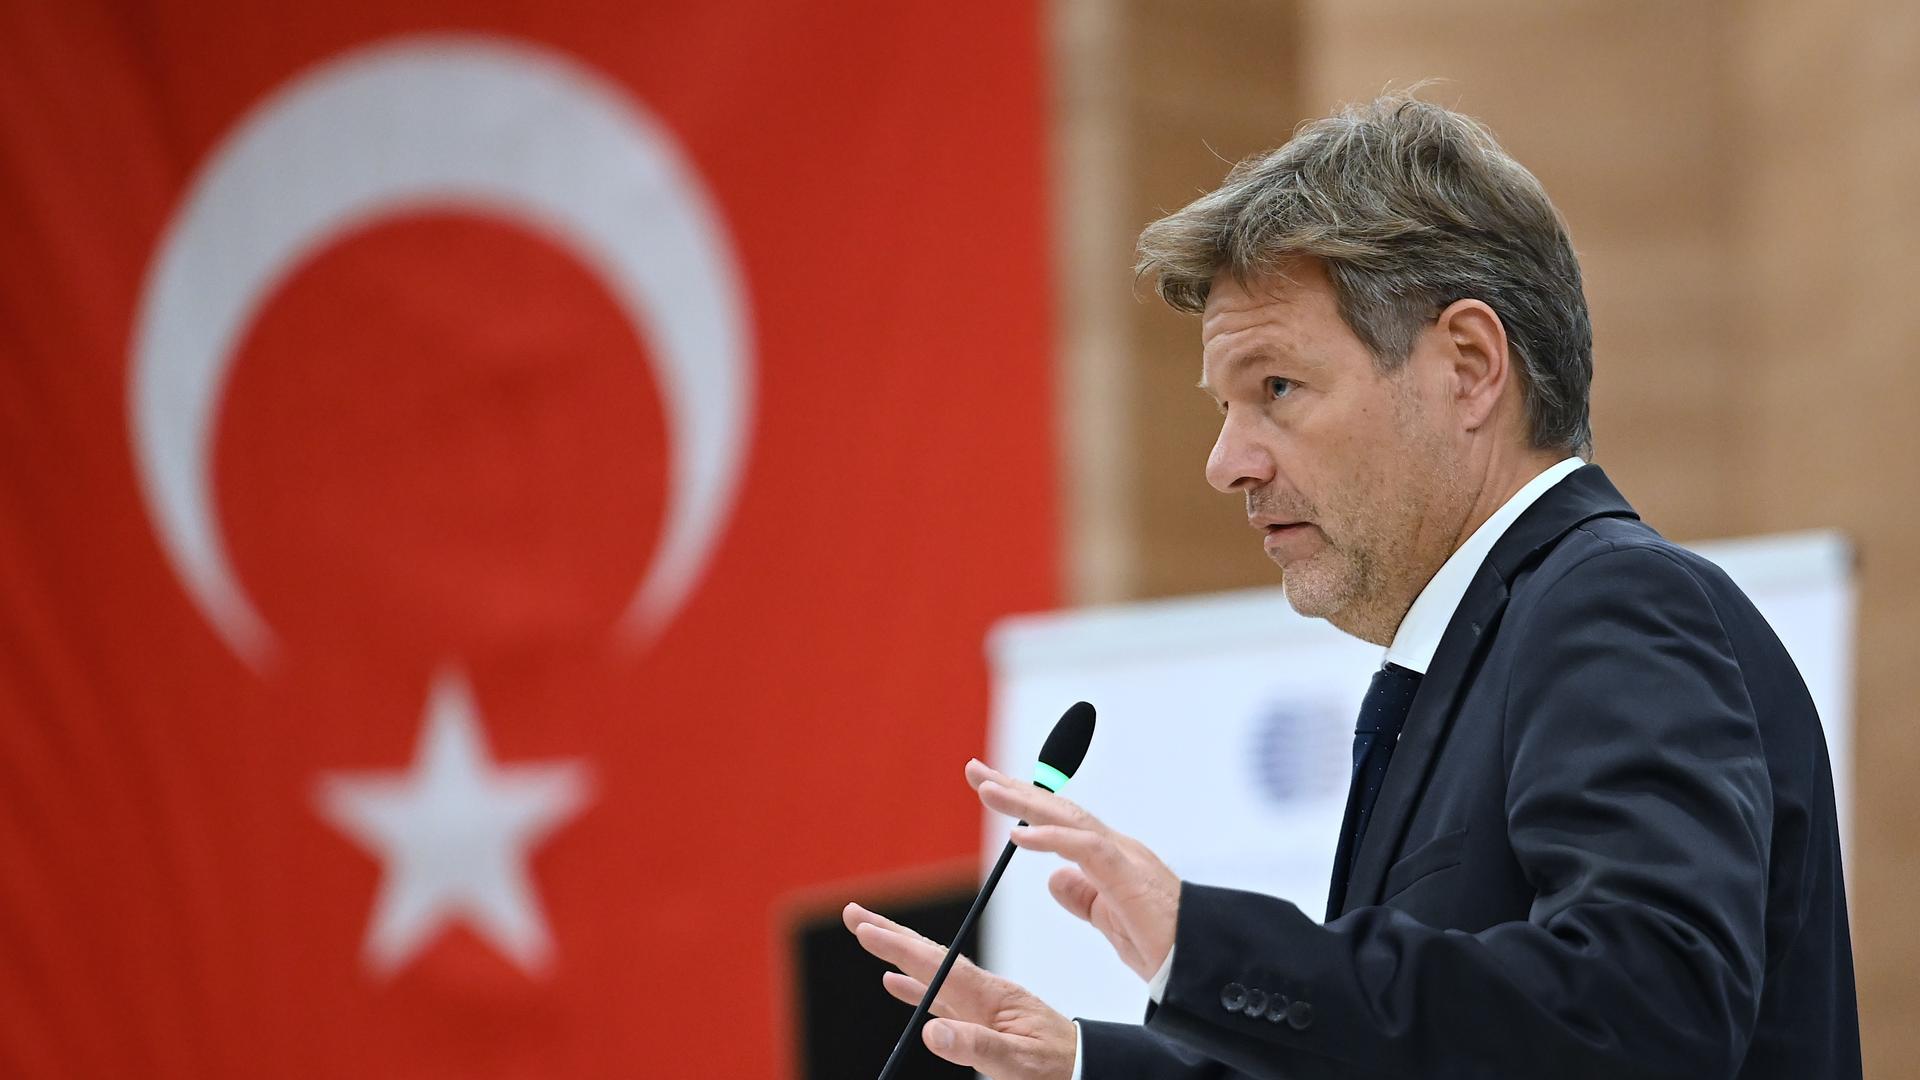 Wirtschaftsminister Robert Habeck spricht in der Türkei beim Deutsch-Türkischen Energieforum, im Hintergrund hängt eine türkische Flagge. 